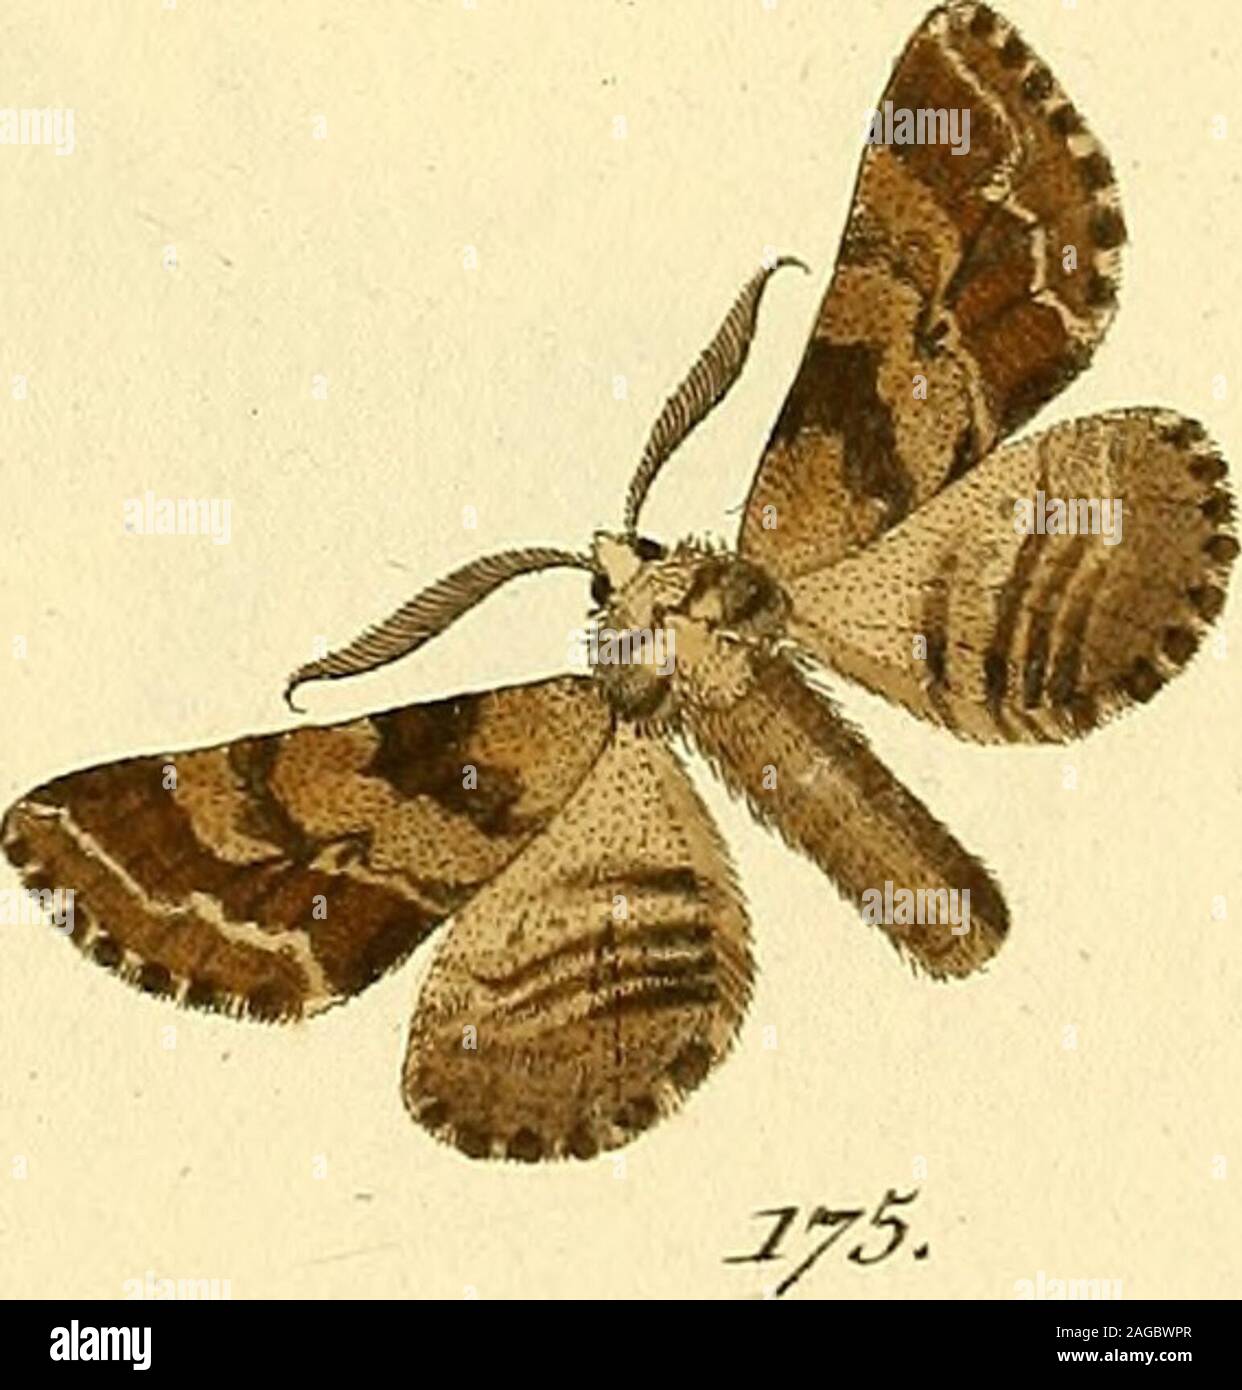 . Sammlung europscher Schmetterlinge, errichtet von Jacob Hner in Augsburg. 35. ^dffz^opz&rcz,, V. ^-^^7ne^?-&lt;z., JT. CyceOMC VOC£C^,- Ji. Stock Photo